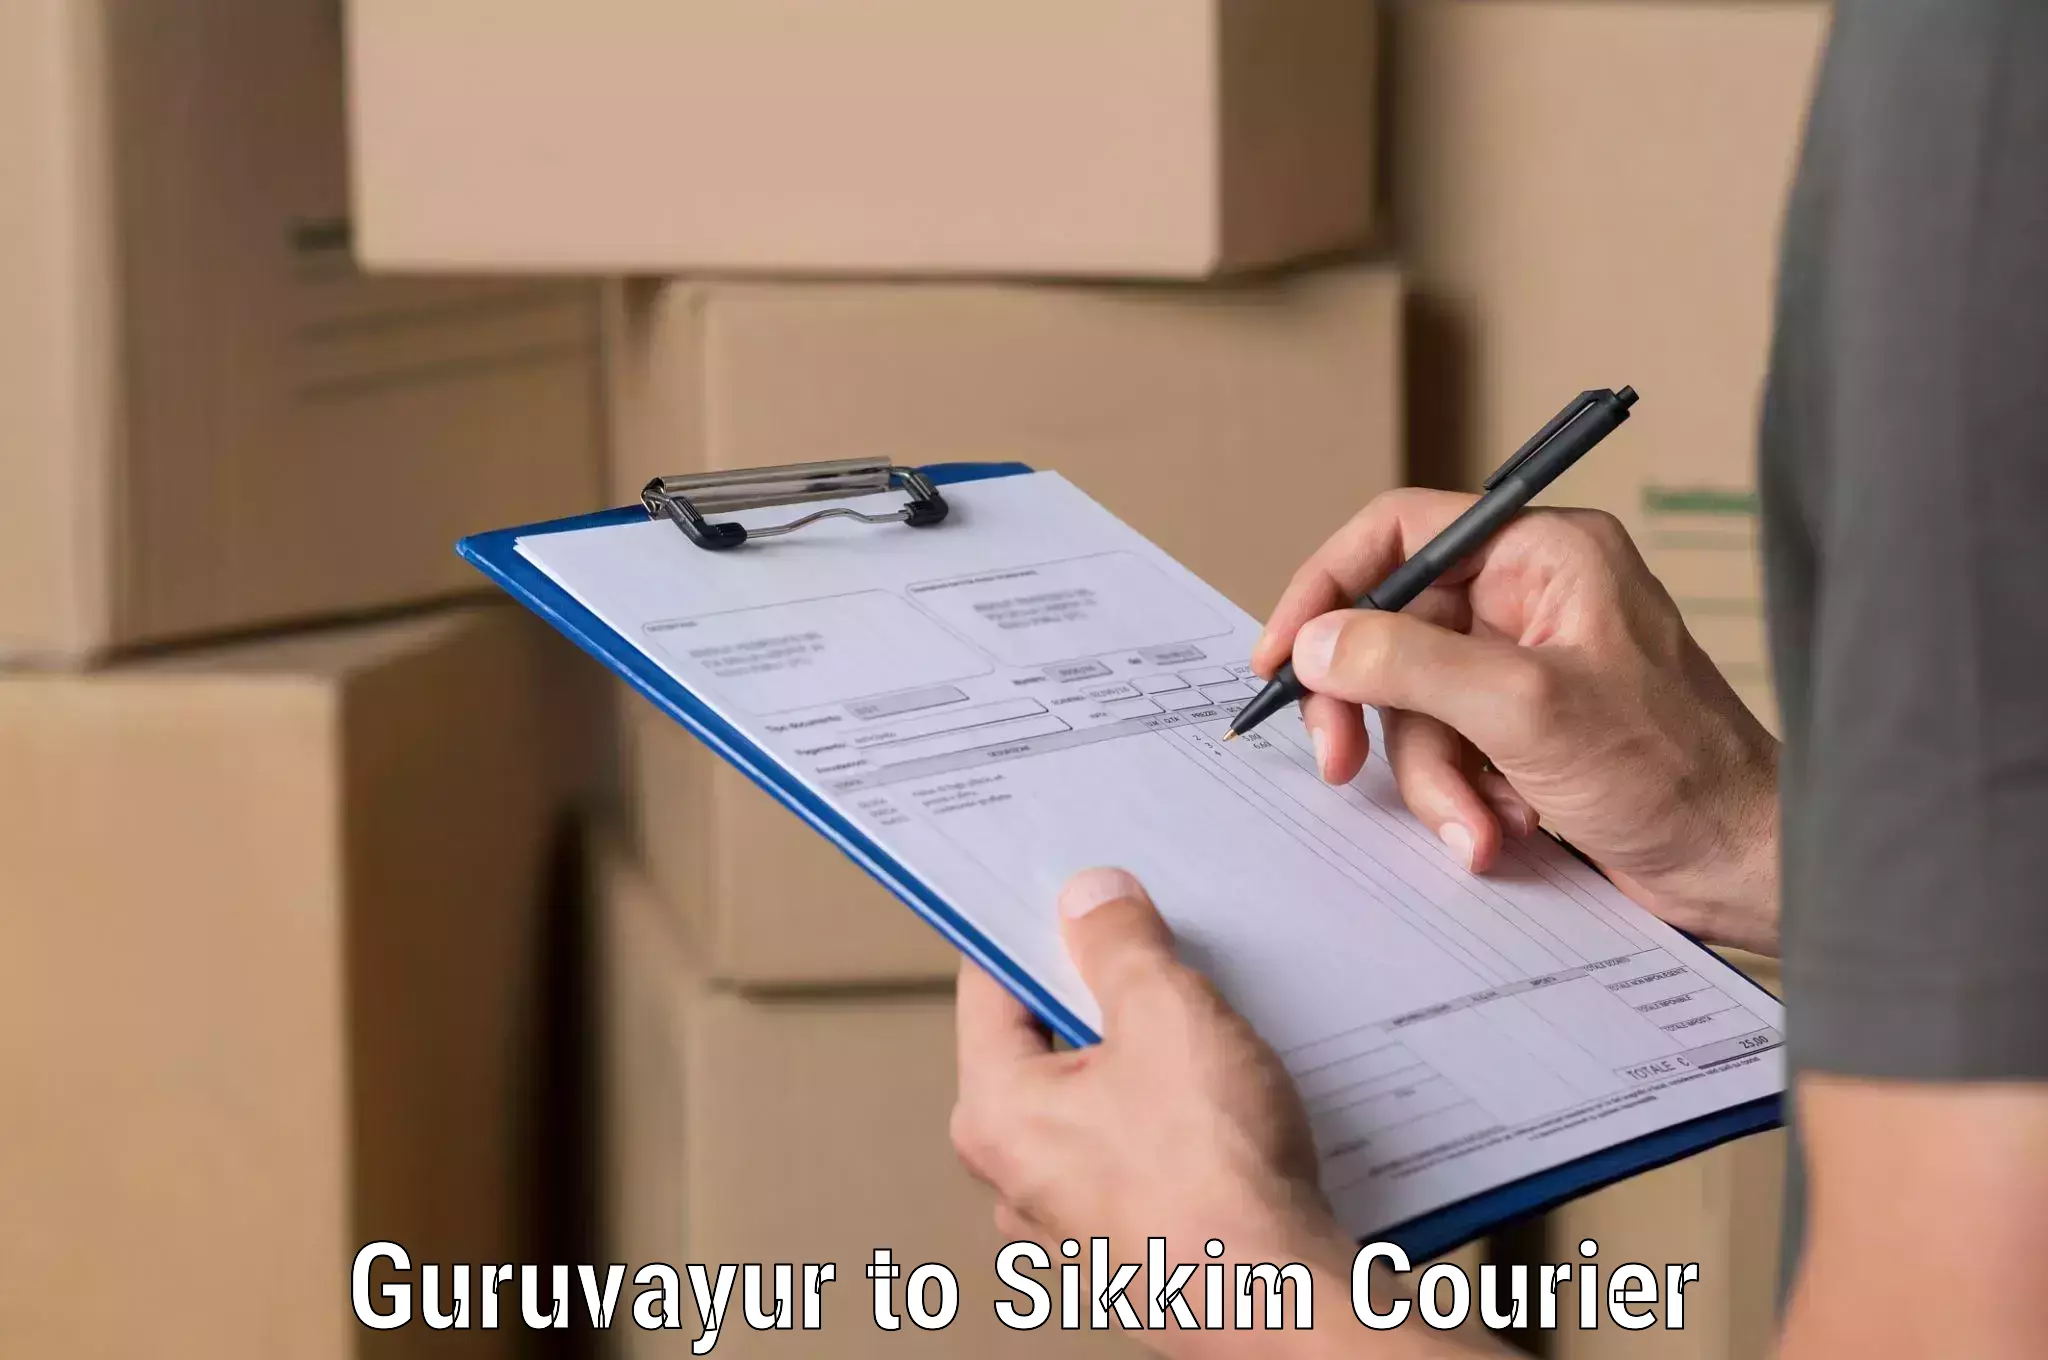 High-speed parcel service Guruvayur to Sikkim